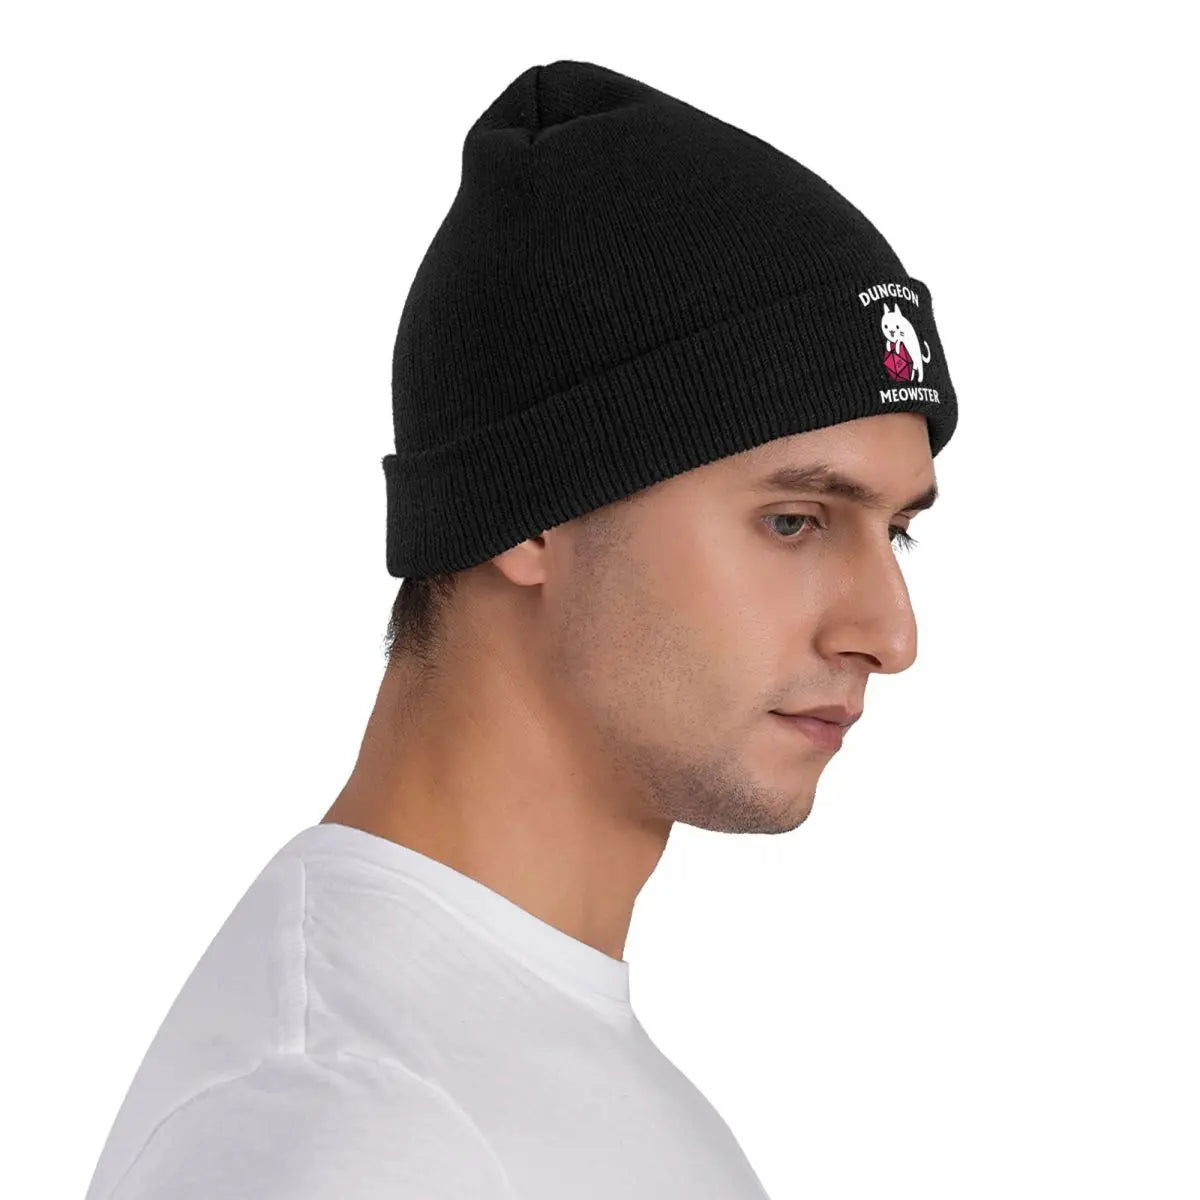 DnD Meowster chapeaux automne hiver bonnet mode donjon maître chat casquettes hommes femmes acrylique tricoté casquettes